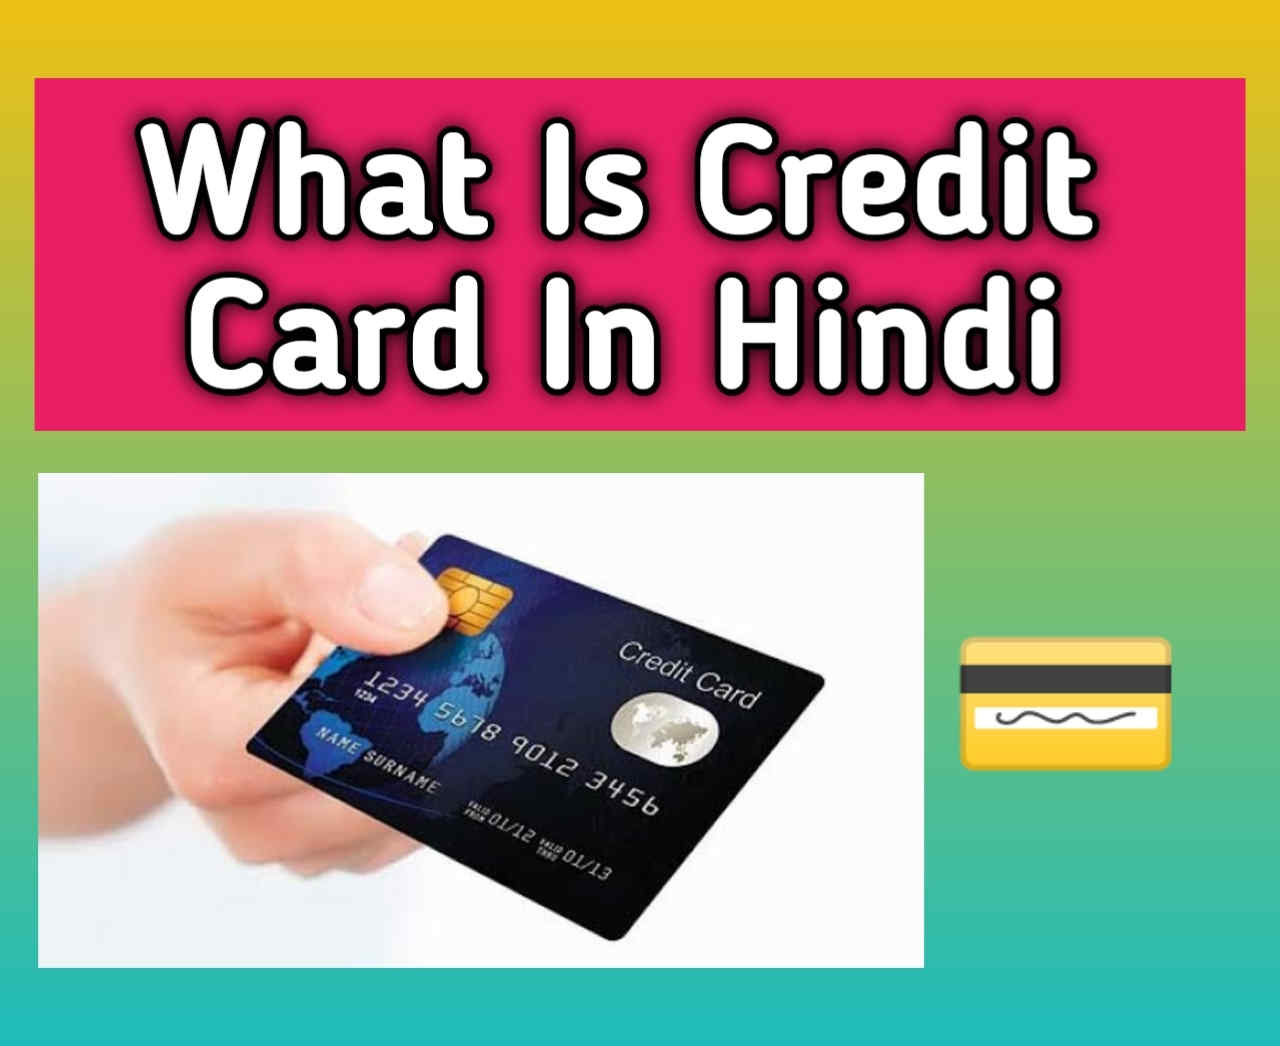 What is credit card in hindi. क्रेडिट कार्ड क्या होता है हिन्दी में बताये?